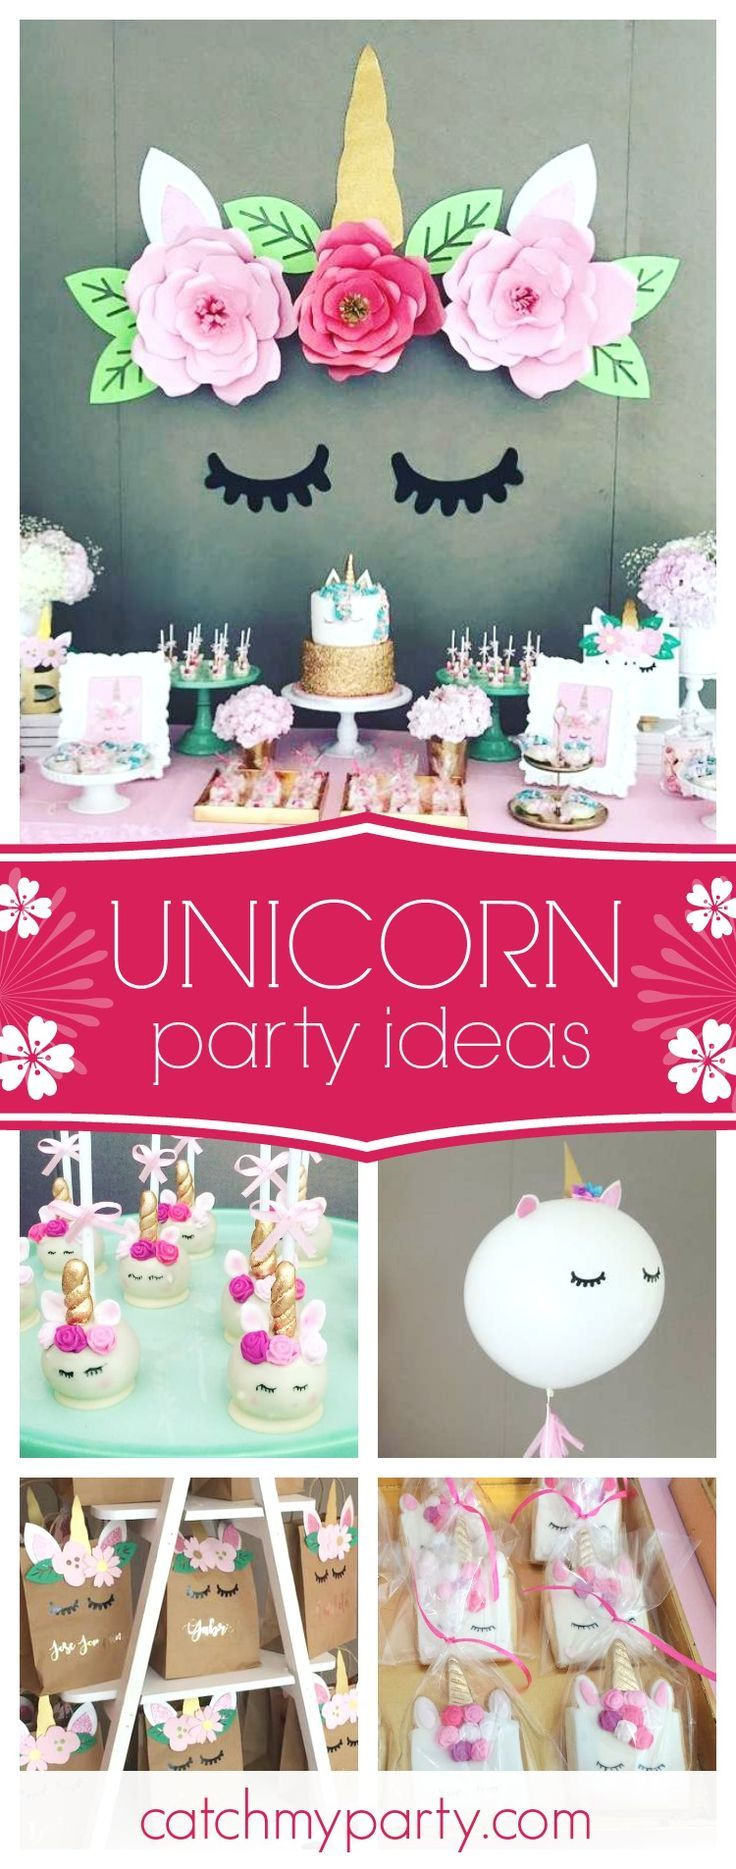 Unicorn Bday Party Ideas
 Best 25 Unicorn birthday parties ideas on Pinterest